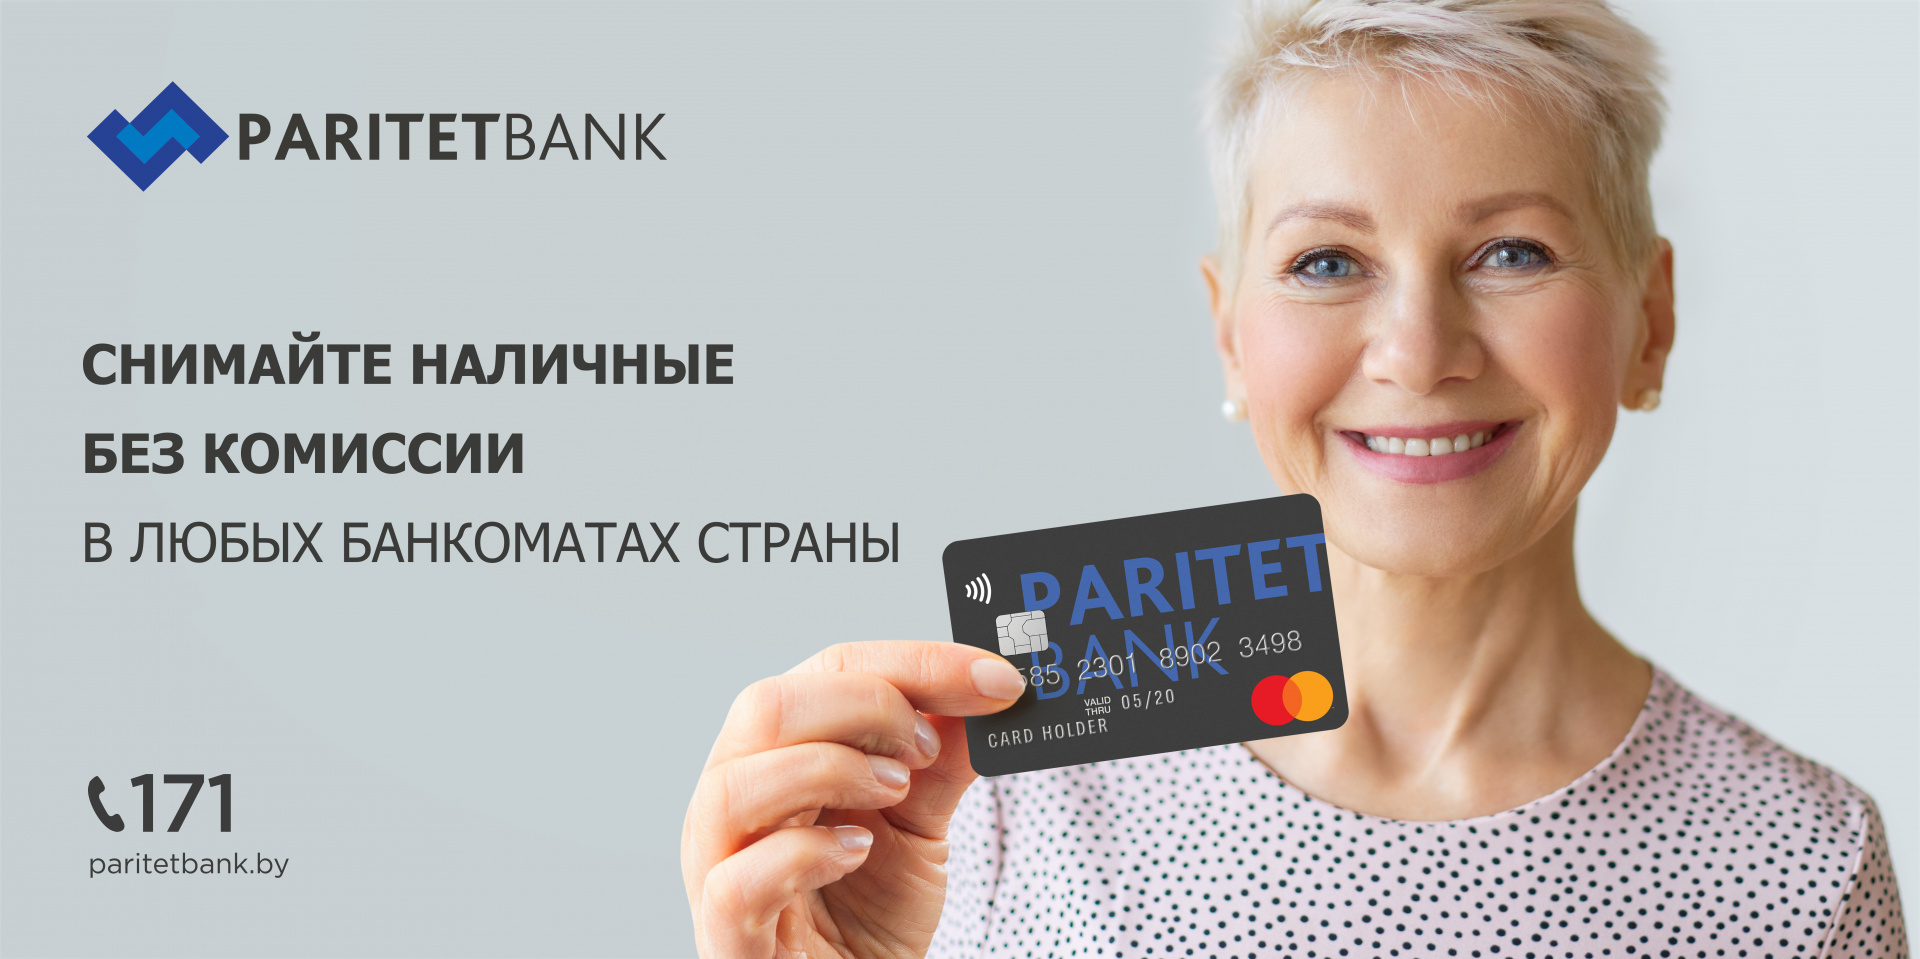 Paritetbank_KV_Zaslujili-woman_6x3_cash.jpg